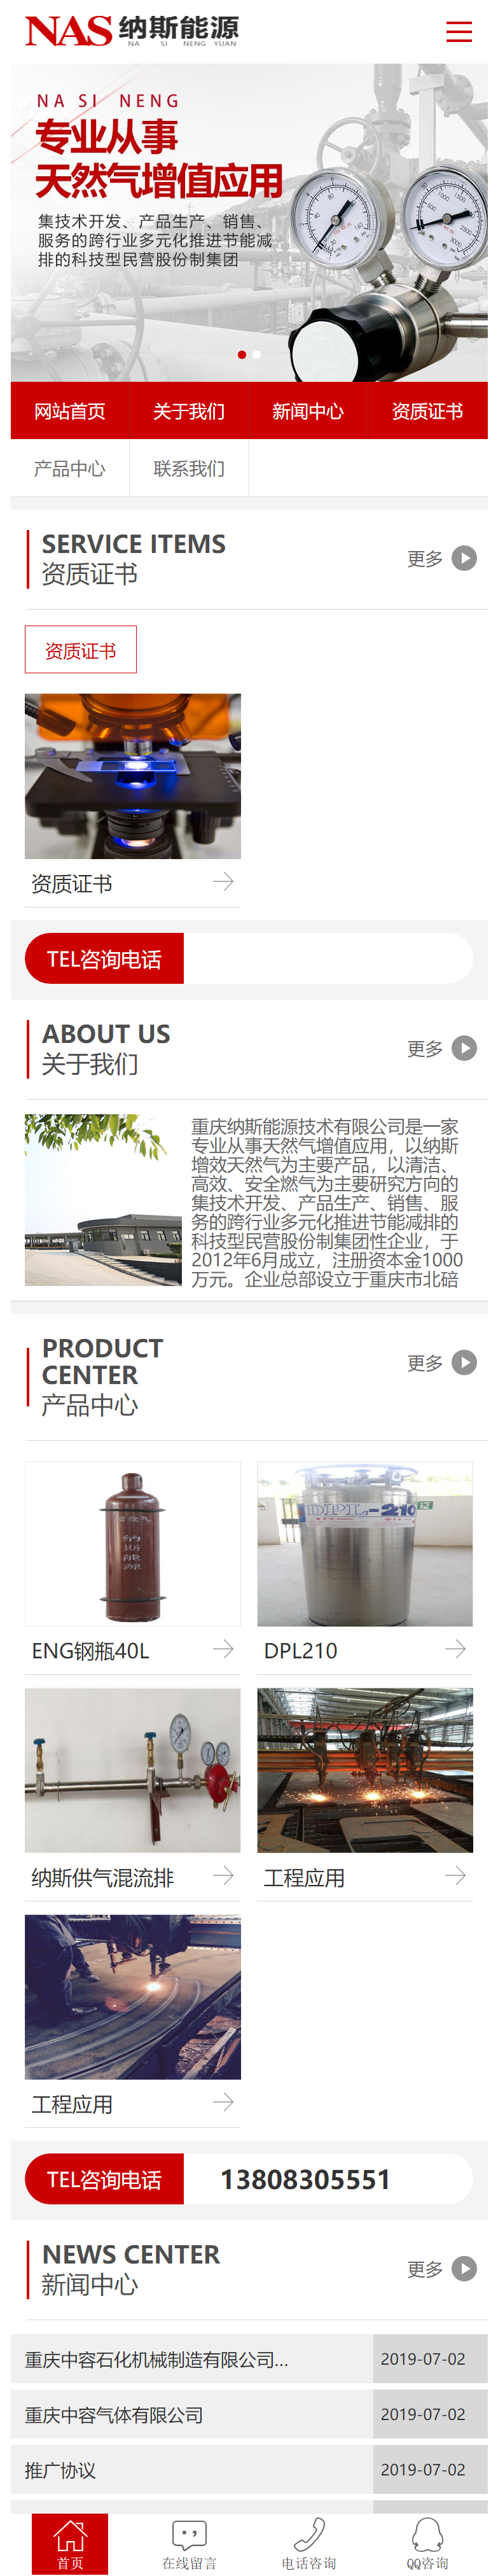 重庆纳斯能源技术有限公司网站案例